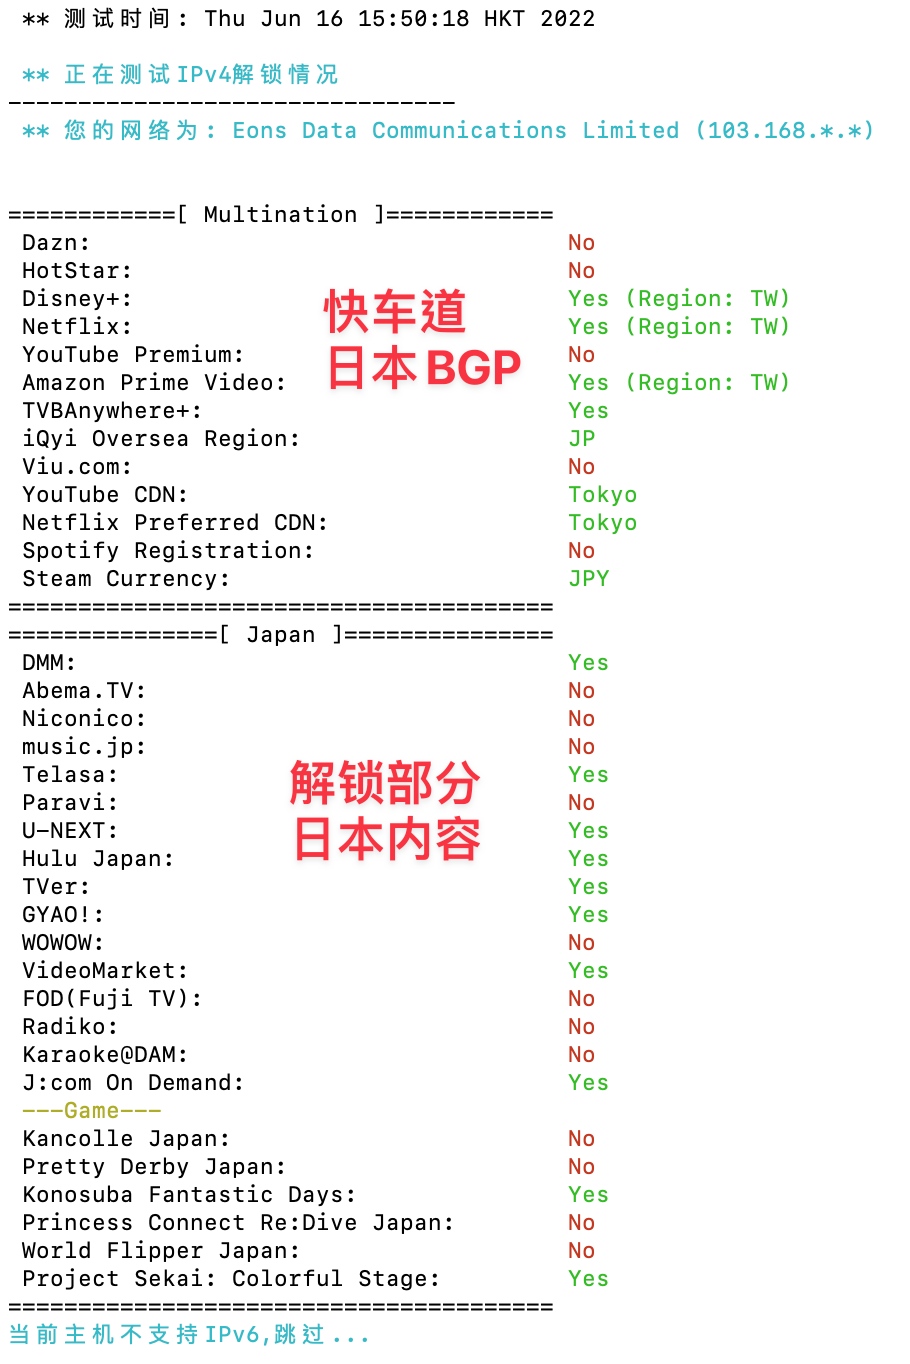 快车道日本BGP，解锁部分日本内容。